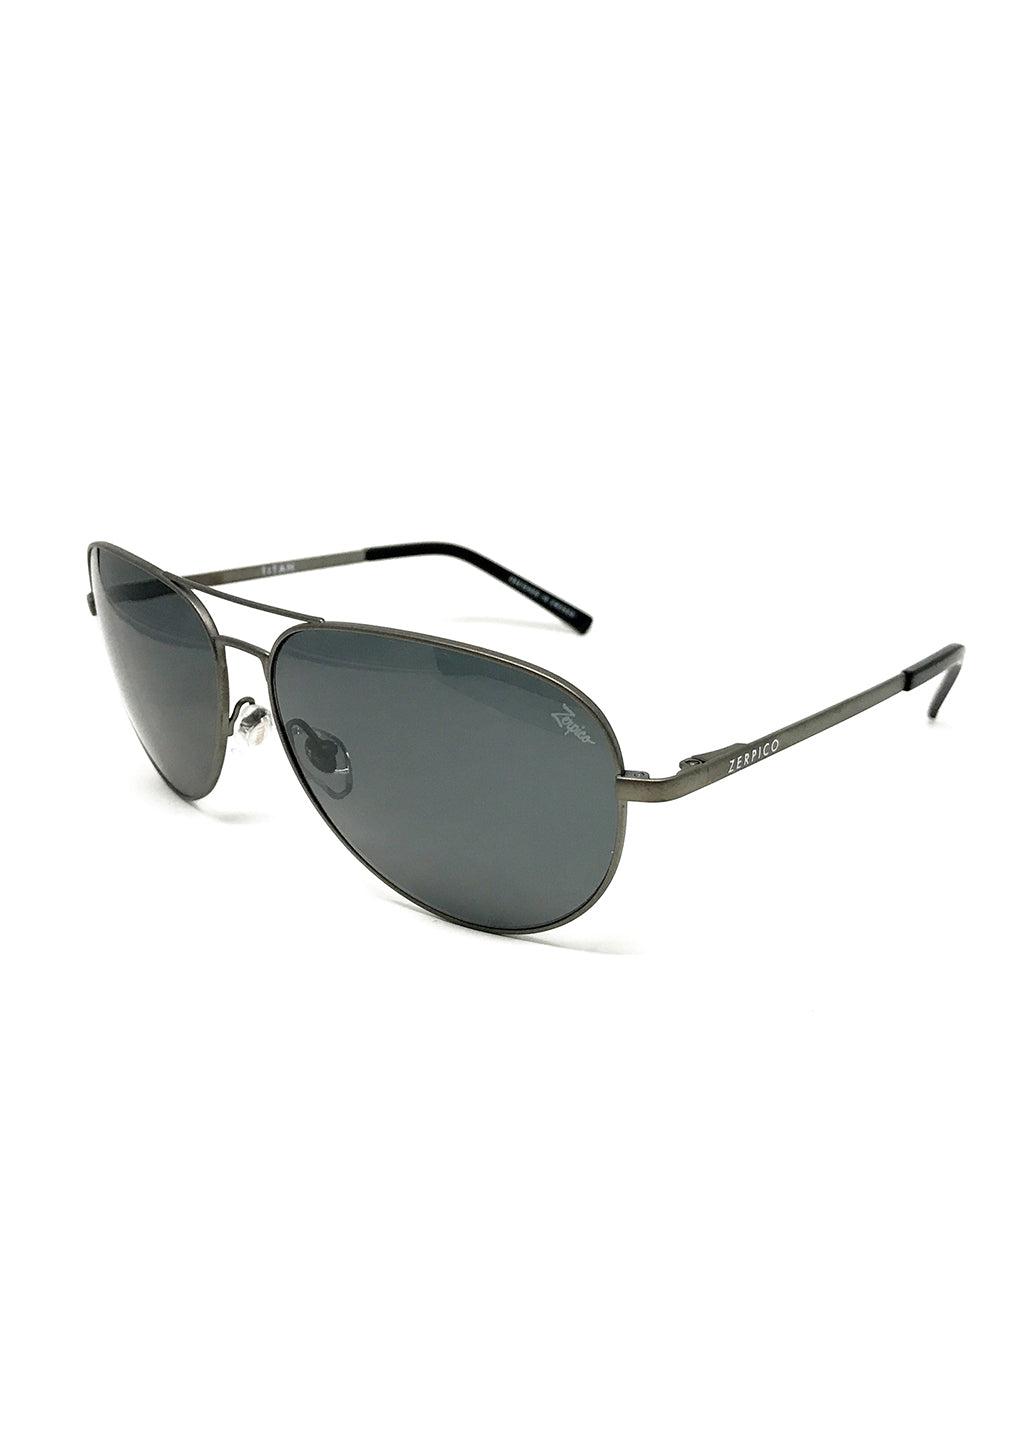 Titanium Aviator Sunglasses  - Rare Last Pack - Gun Metal